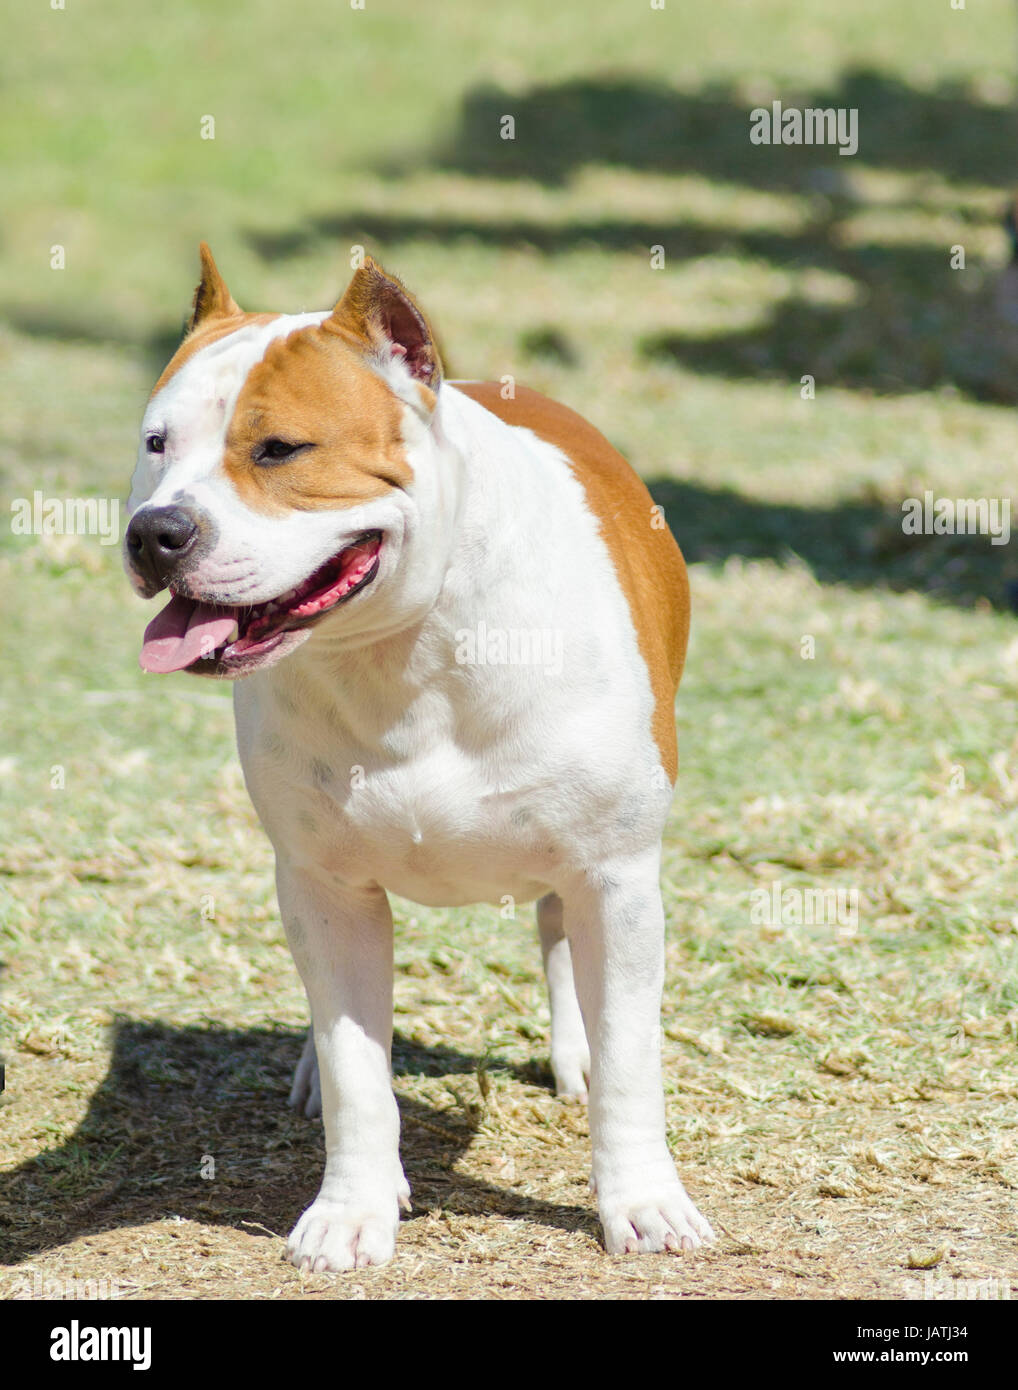 Un petit, jeune, beau, blanc et sable rouge American Staffordshire Terrier debout sur la pelouse tout en collant sa langue, et à la fois ludique et joyeux. Ses oreilles sont coupées. Banque D'Images